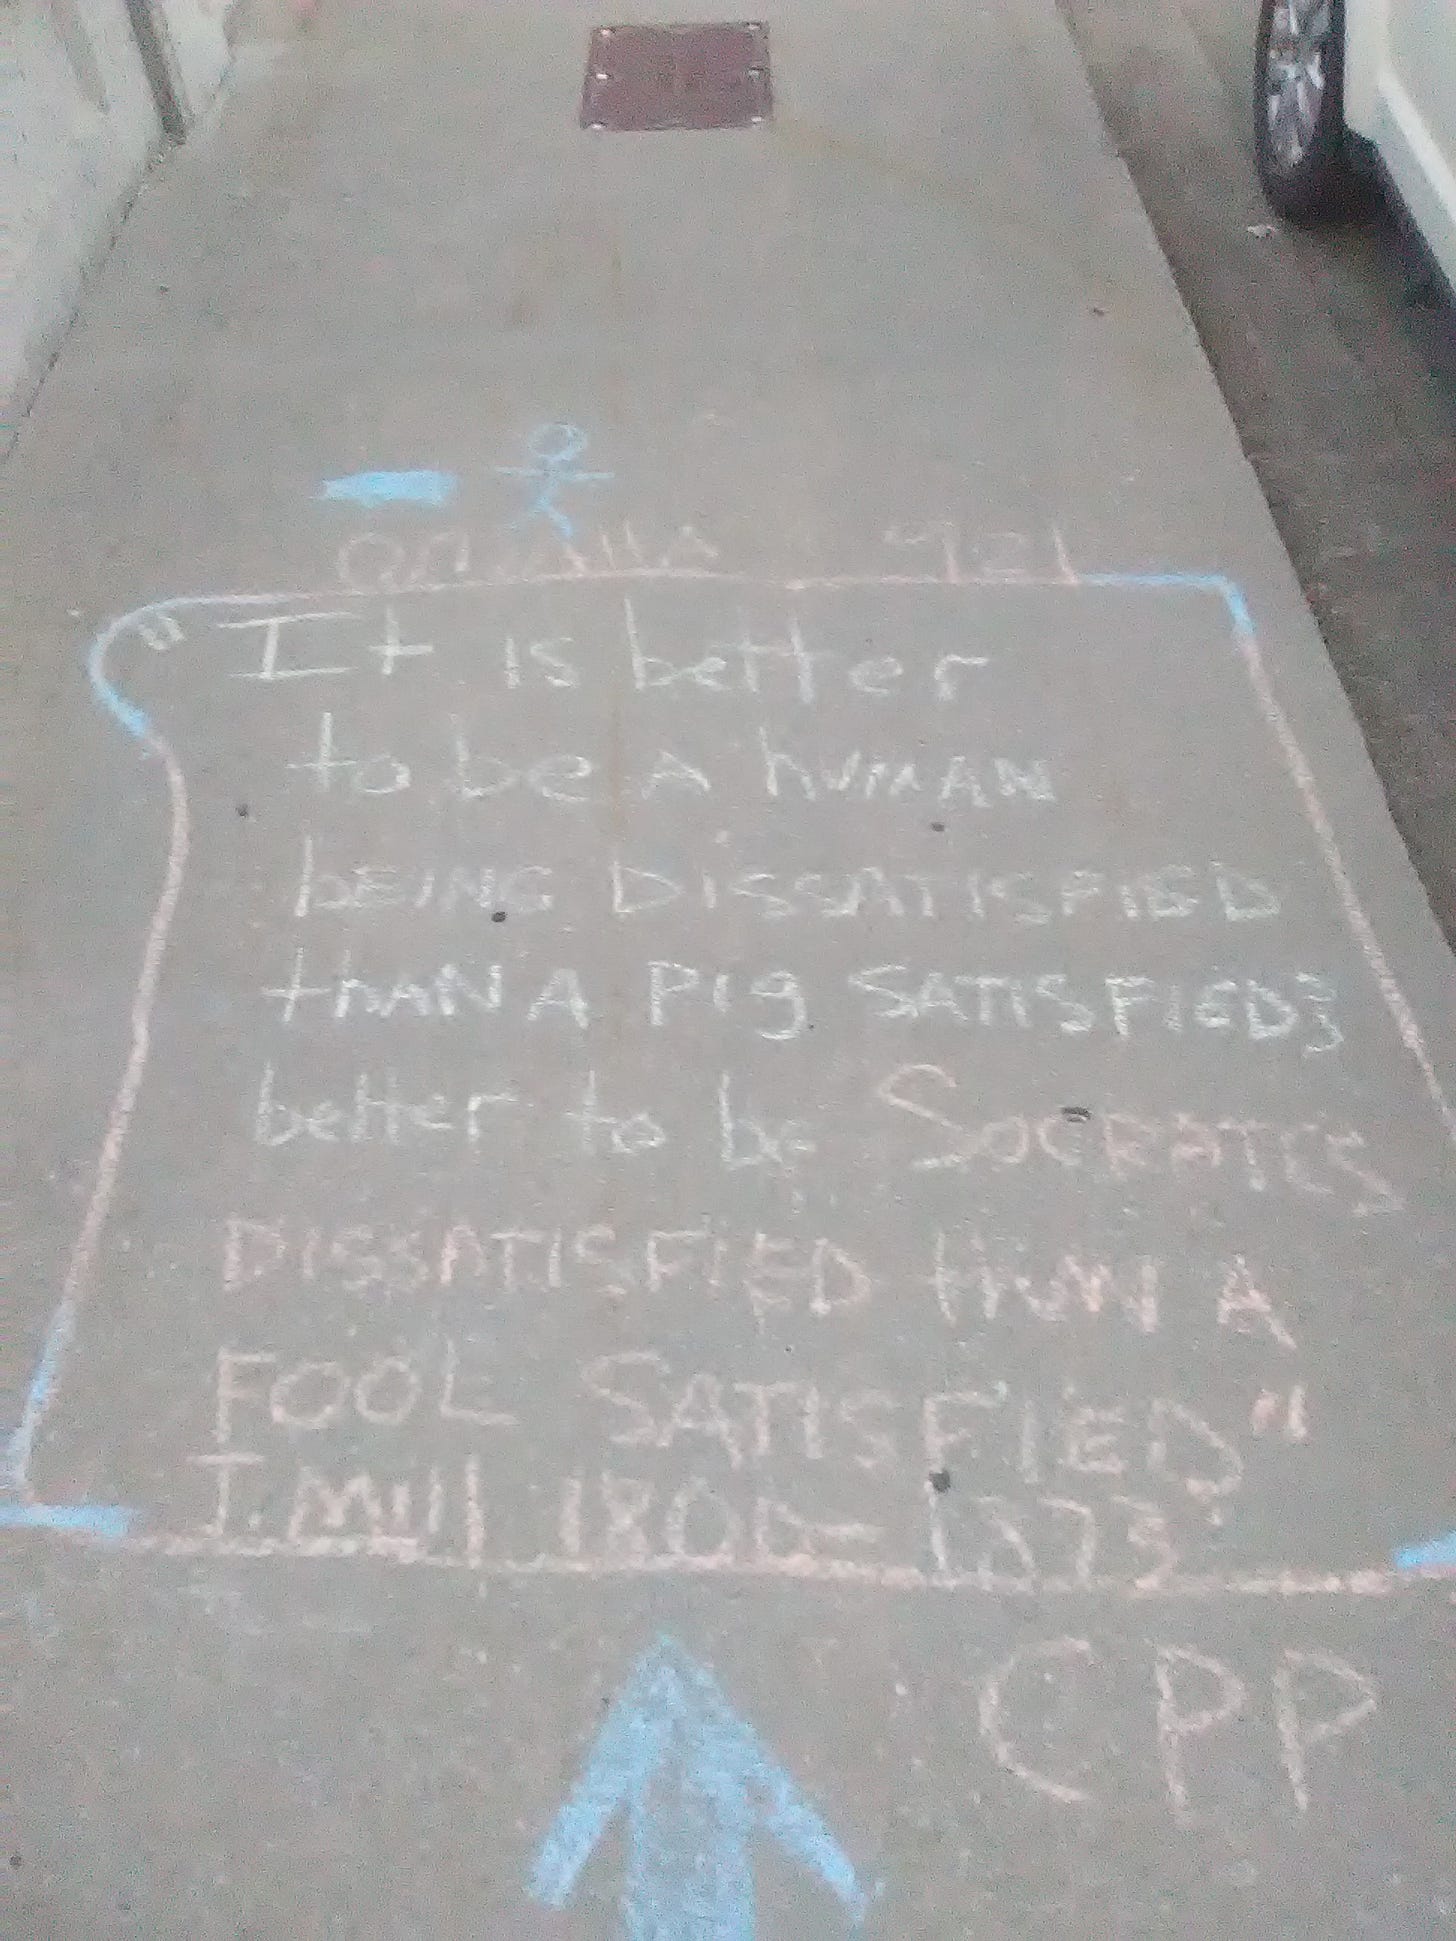 Chalk drawing on a sidewalk.